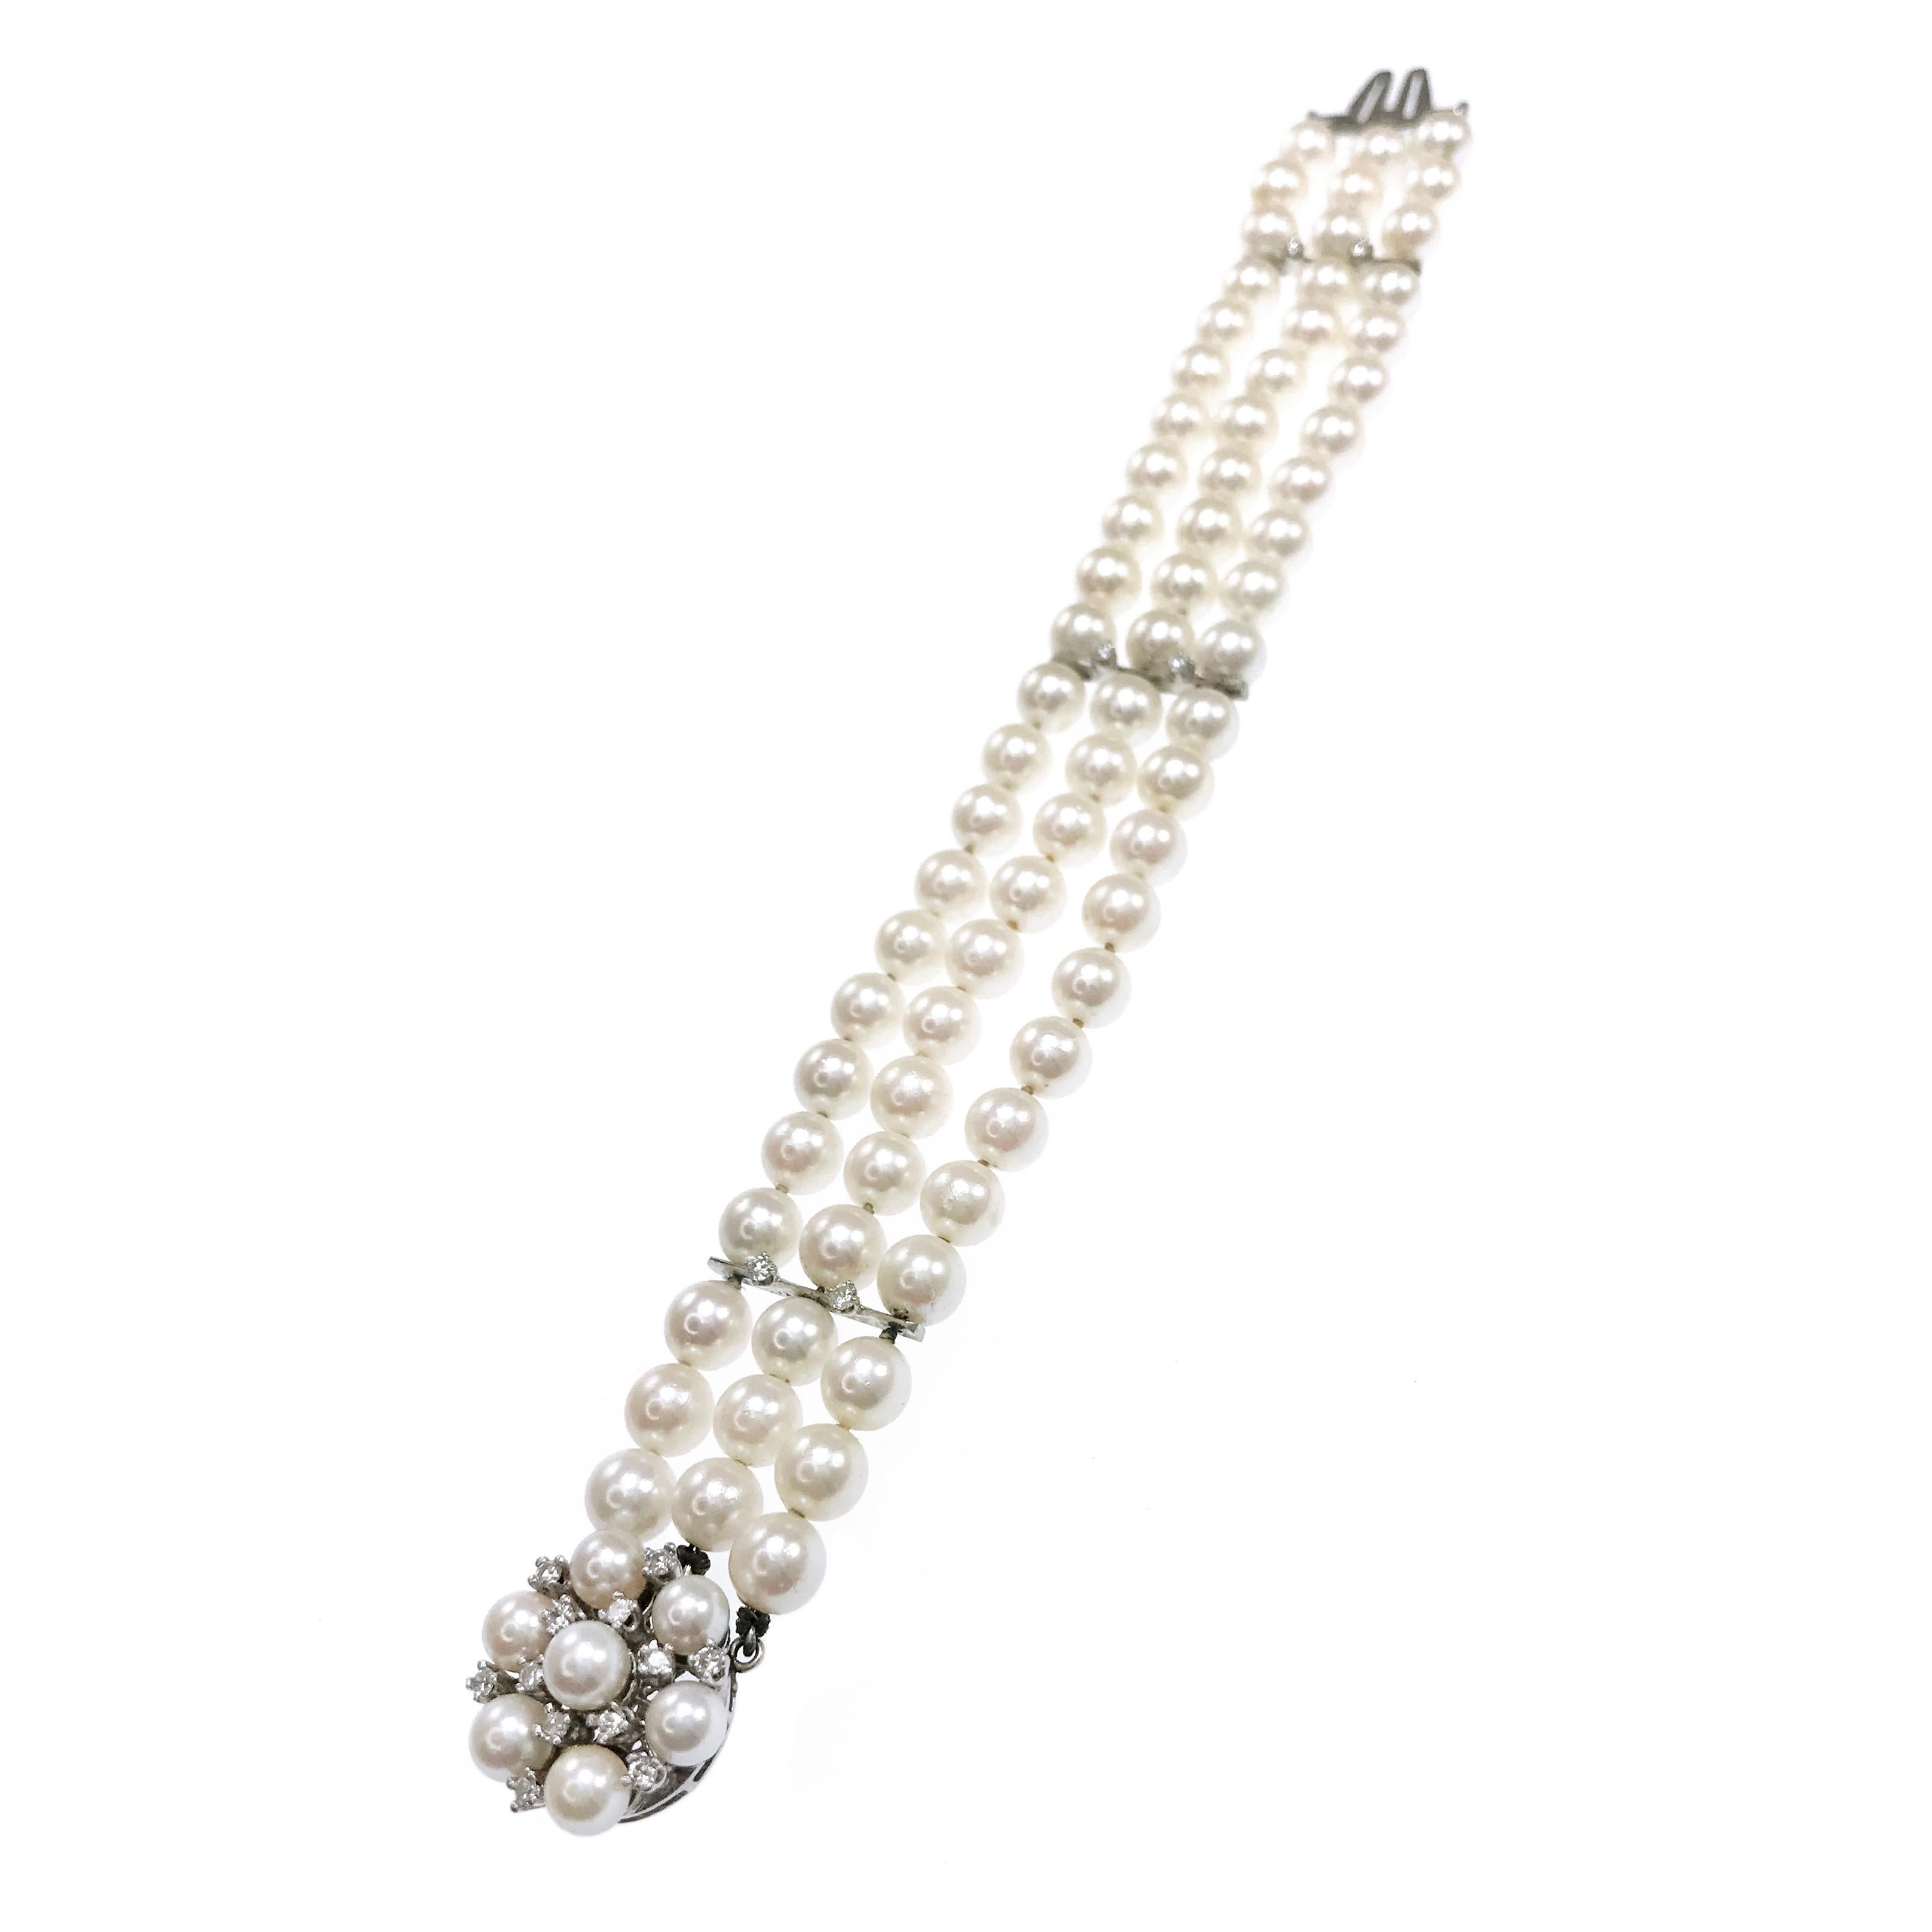 14 Karat Dreireihiges Perlen-Diamant-Armband. Zartes dreireihiges Perlenarmband mit diamantenen Akzenten. Sechsundsiebzig 6-mm-Perlen und achtzehn Diamanten. Dies ist ein schönes Stück, drei dünne Stäbe mit zierlichen Diamanten in Zackenfassung